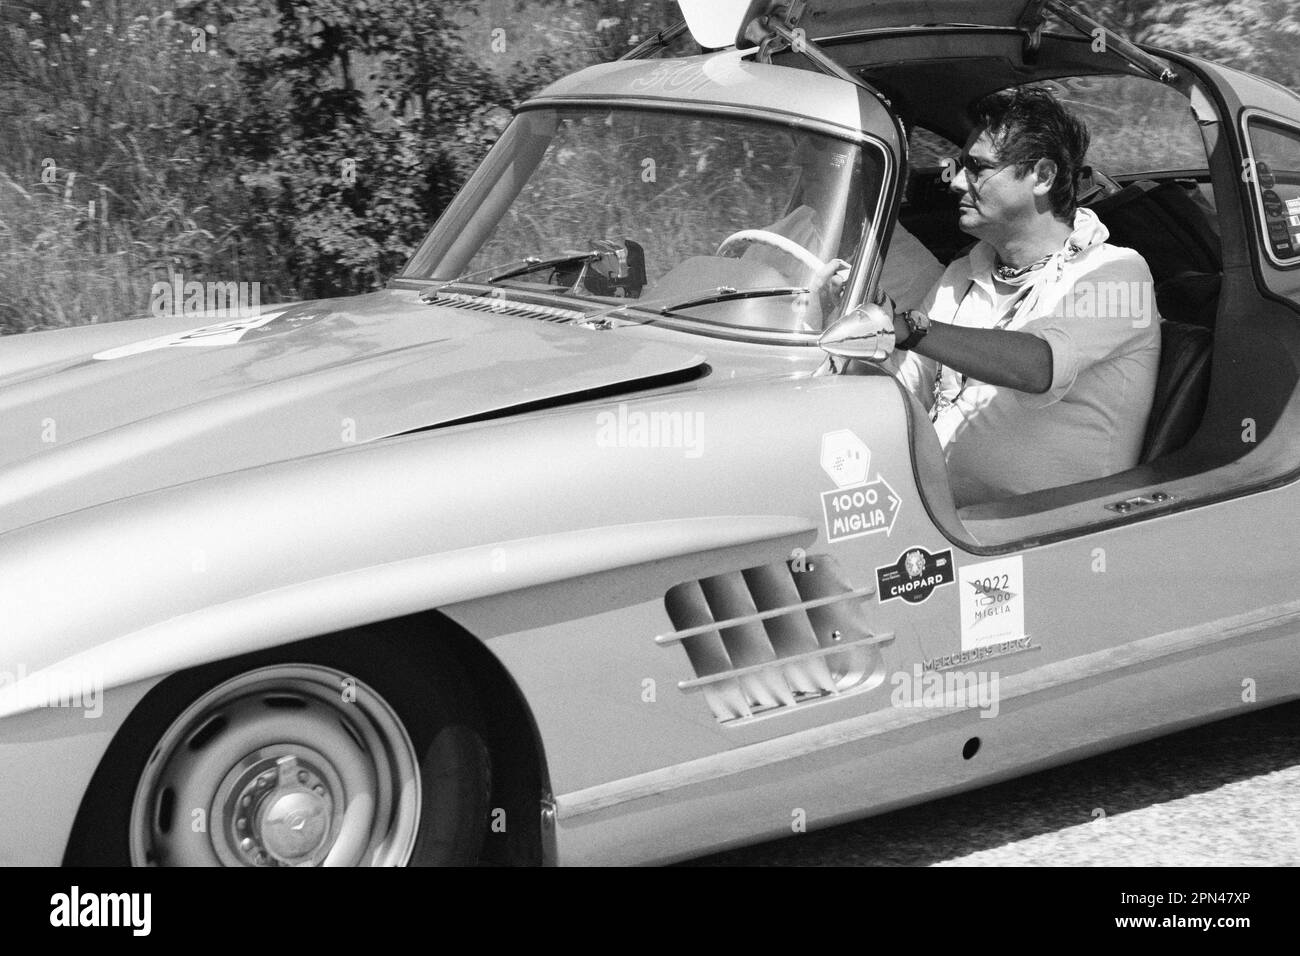 URBINO, ITALIE - 16 JUIN - 2022 : MERCEDES BENZ 300 SL W 198 1955 sur une vieille voiture de course en rallye mille Miglia 2022 la célèbre course historique italienne Banque D'Images